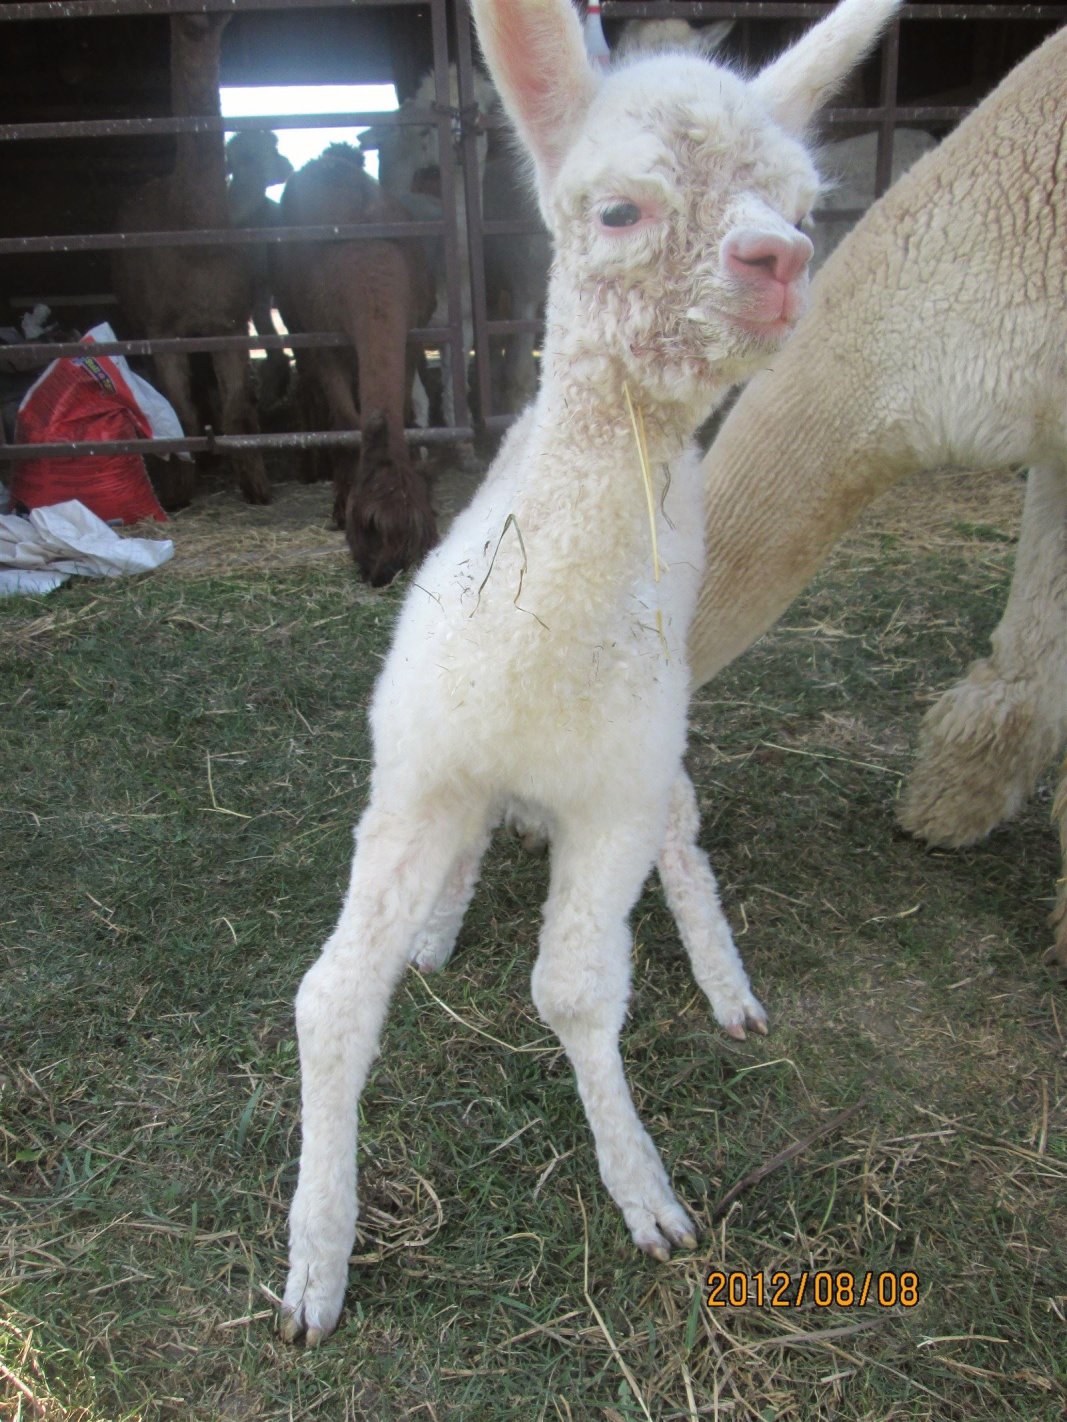 Baby alpaca leg deformity